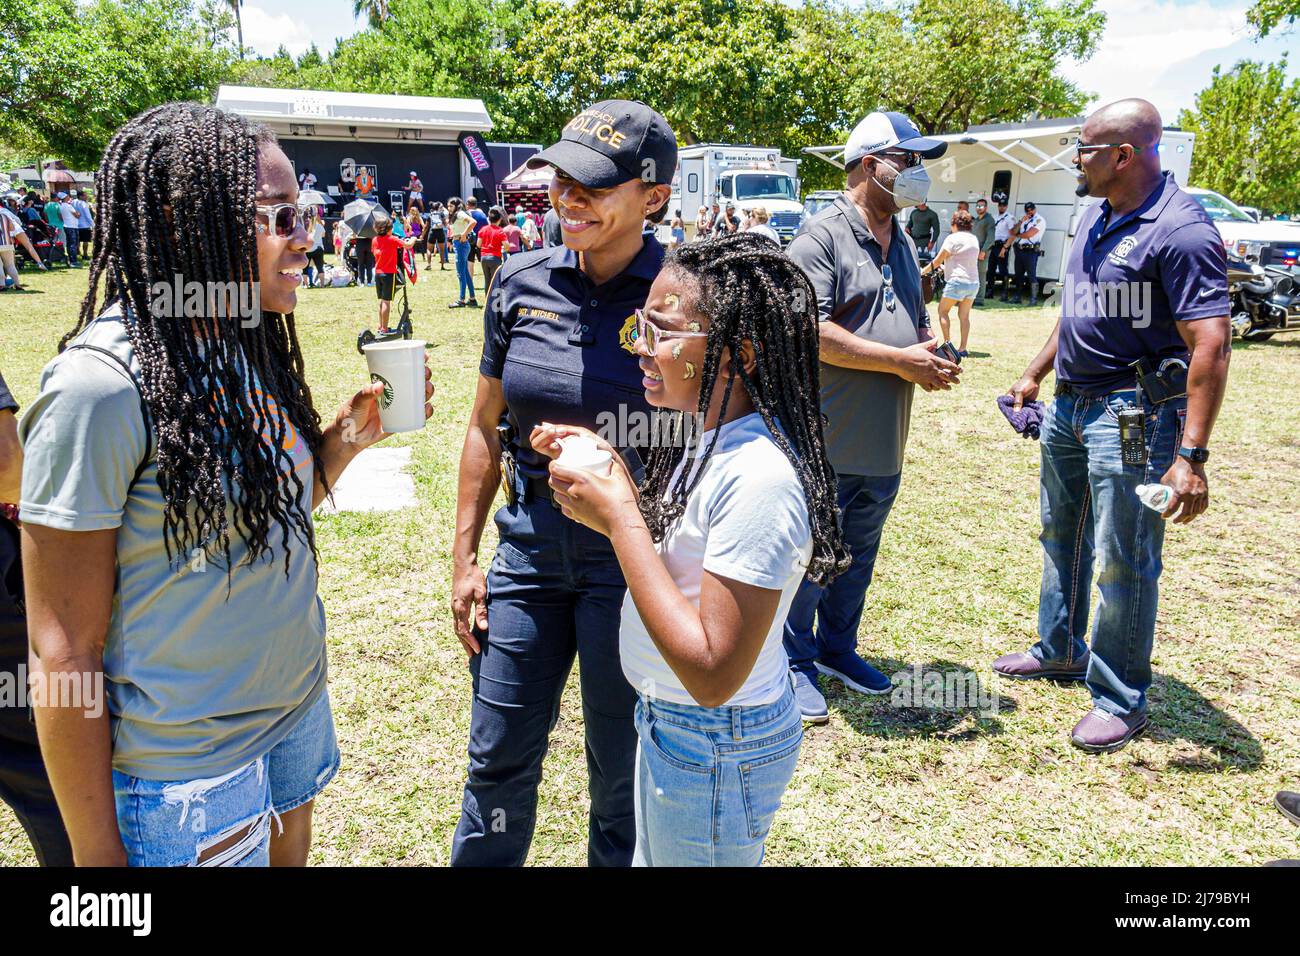 Miami Beach Florida jährliche Miami Beach Police Block Party Familie kostenlose Veranstaltung Flamingo Park Schwarze Frau Polizeibeamter Töchter Stockfoto